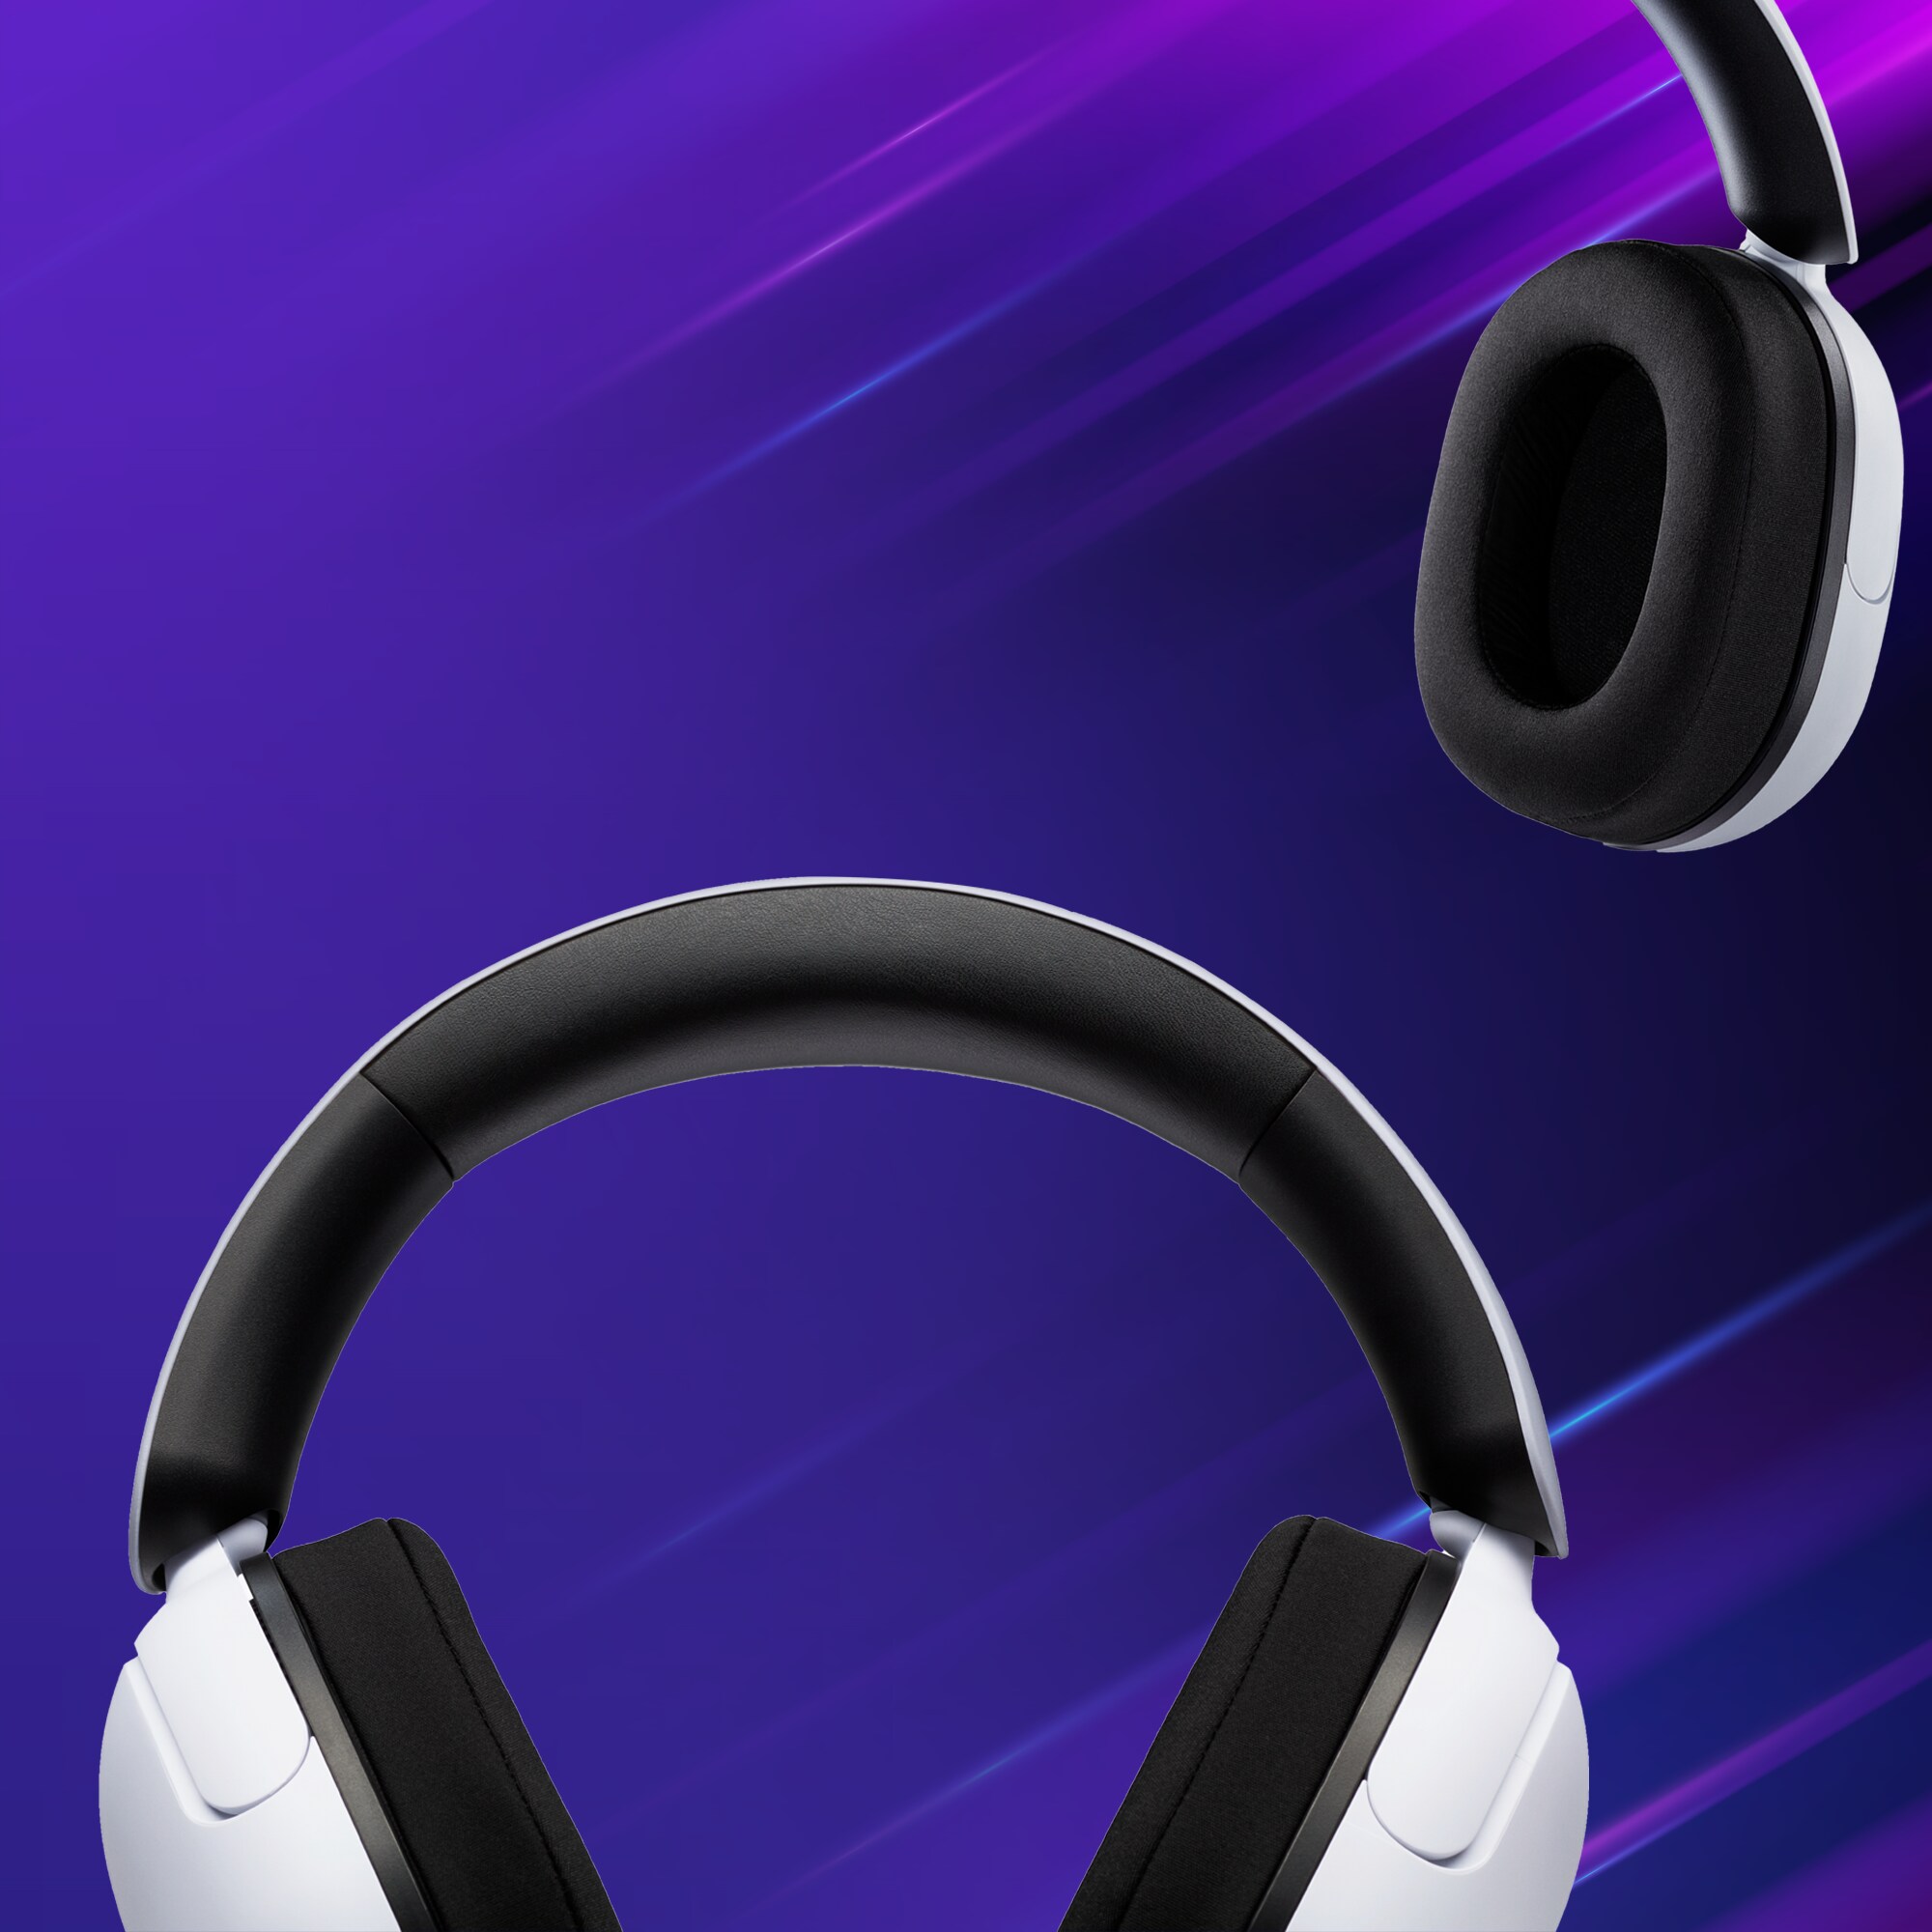 Kahdet Sony Inzone -pelikuulokkeet sini-violetilla taustalla